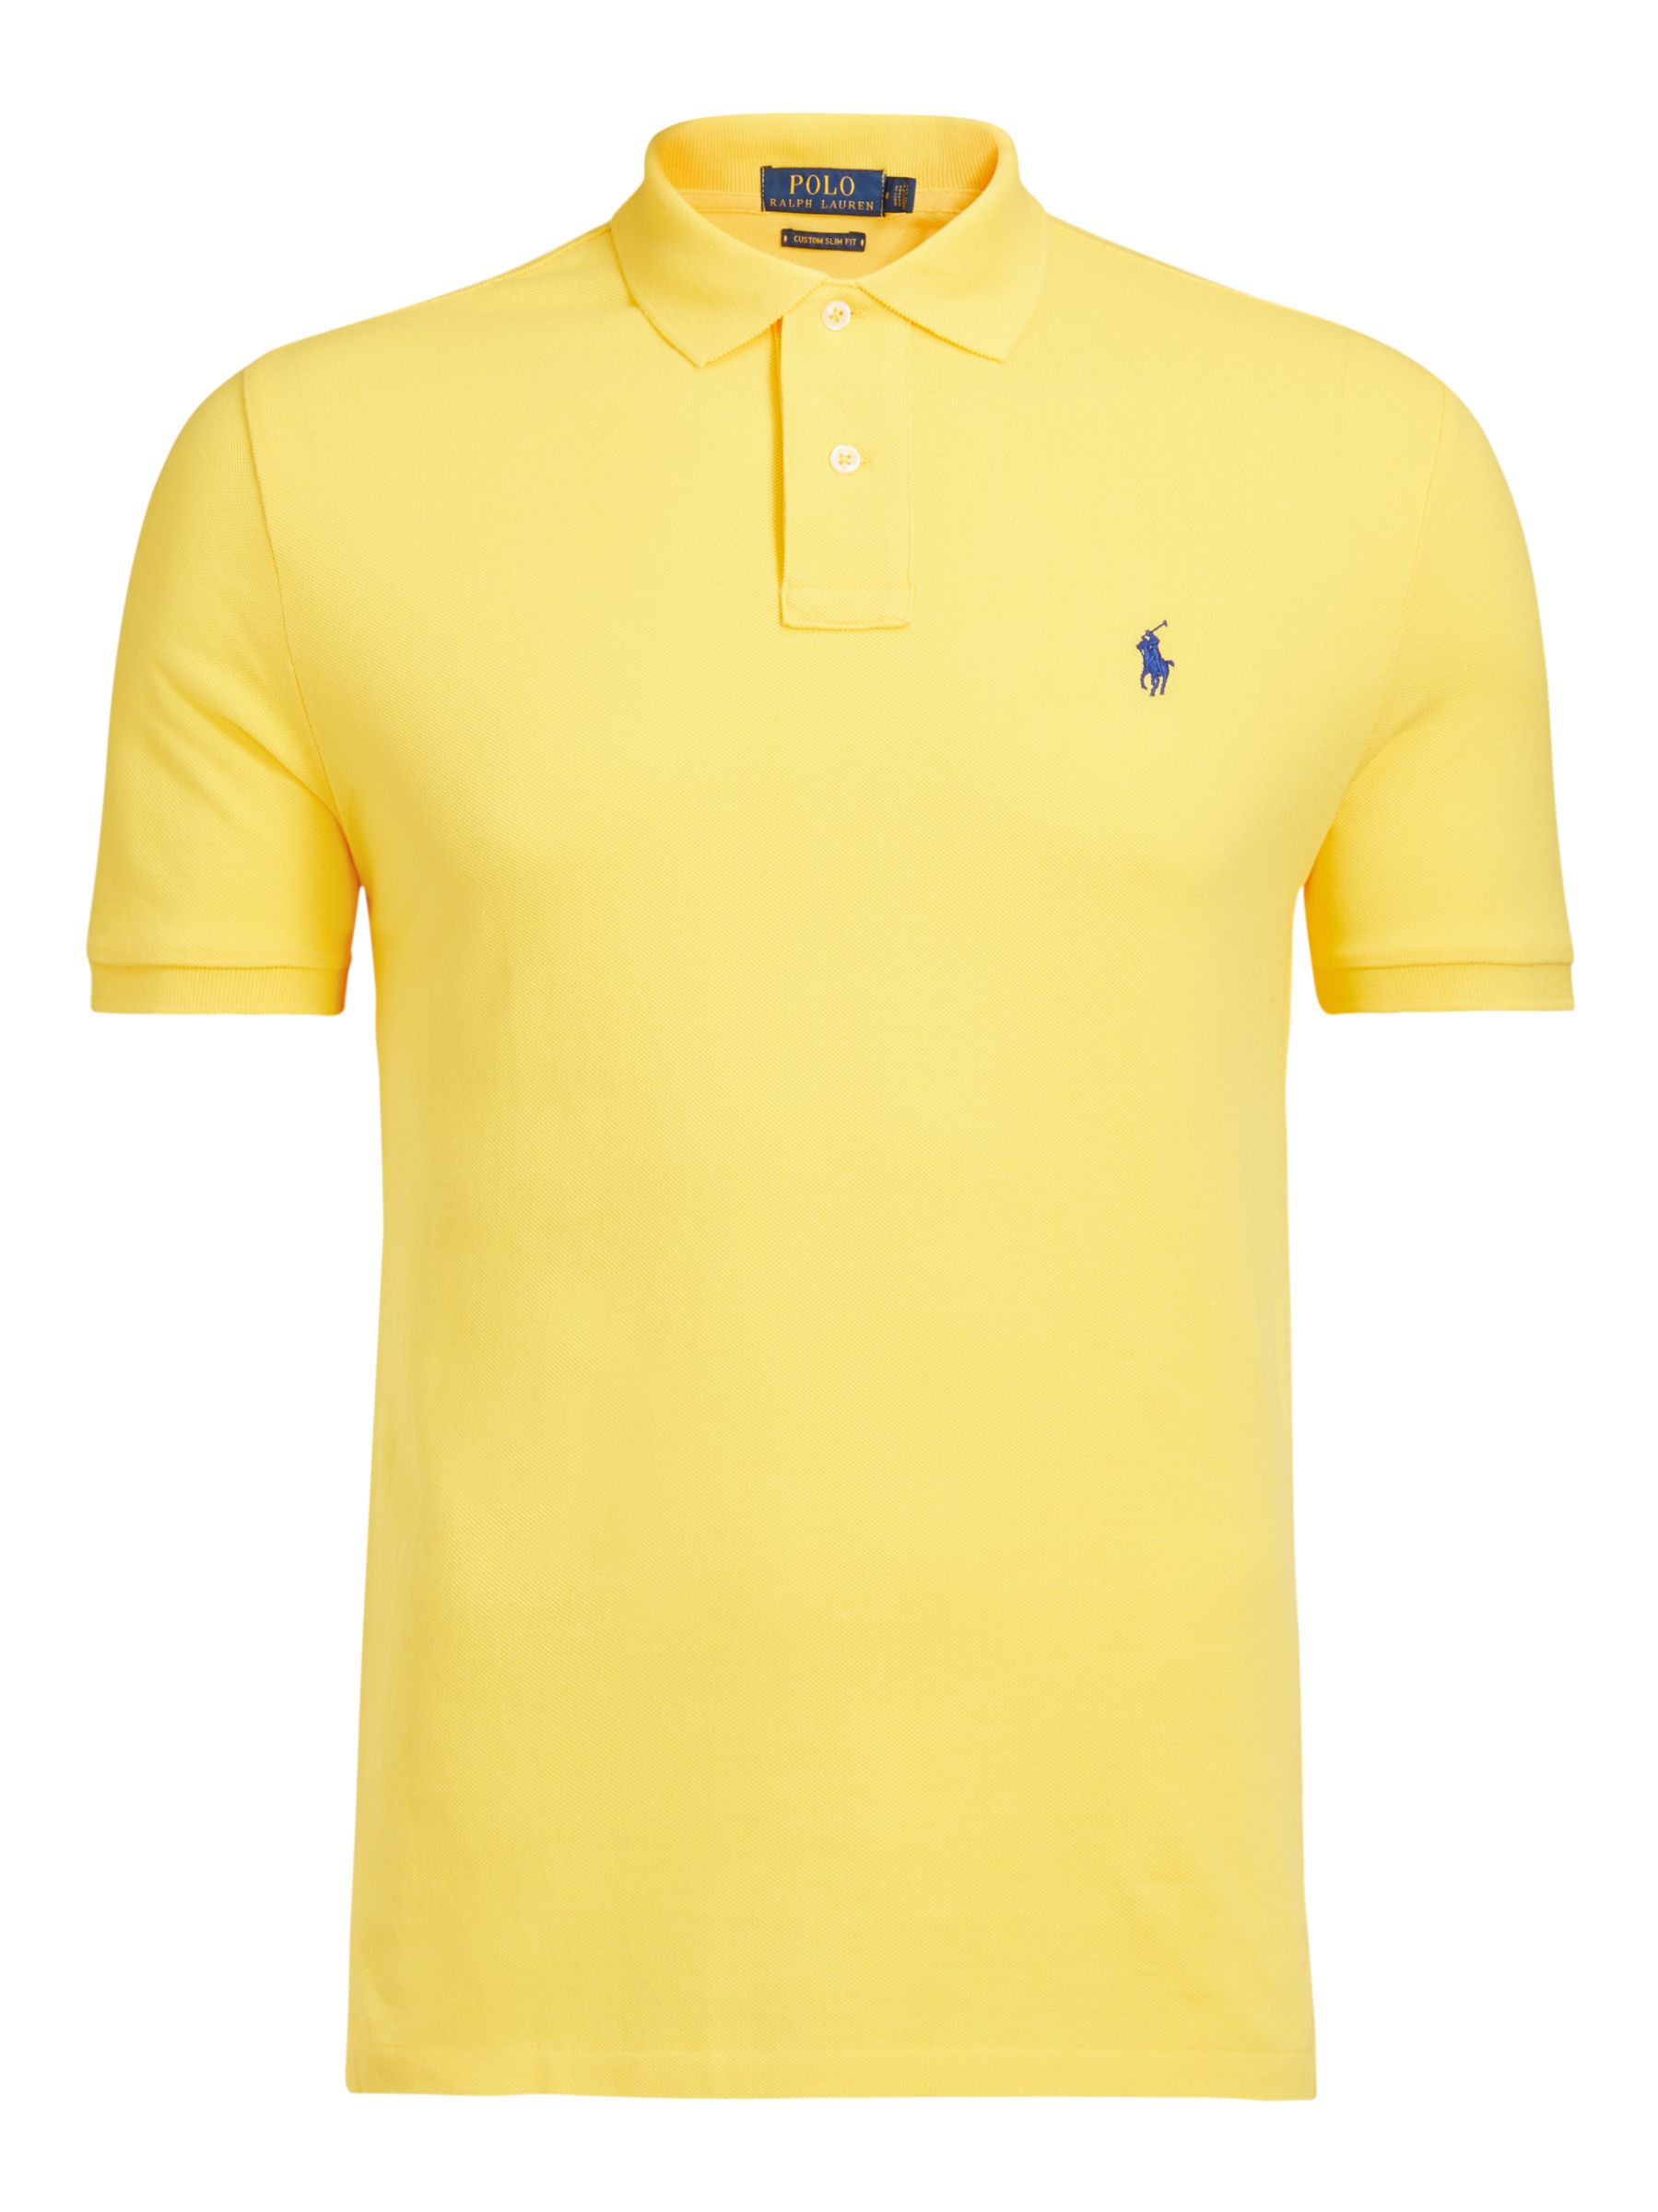 yellow ralph lauren t shirt